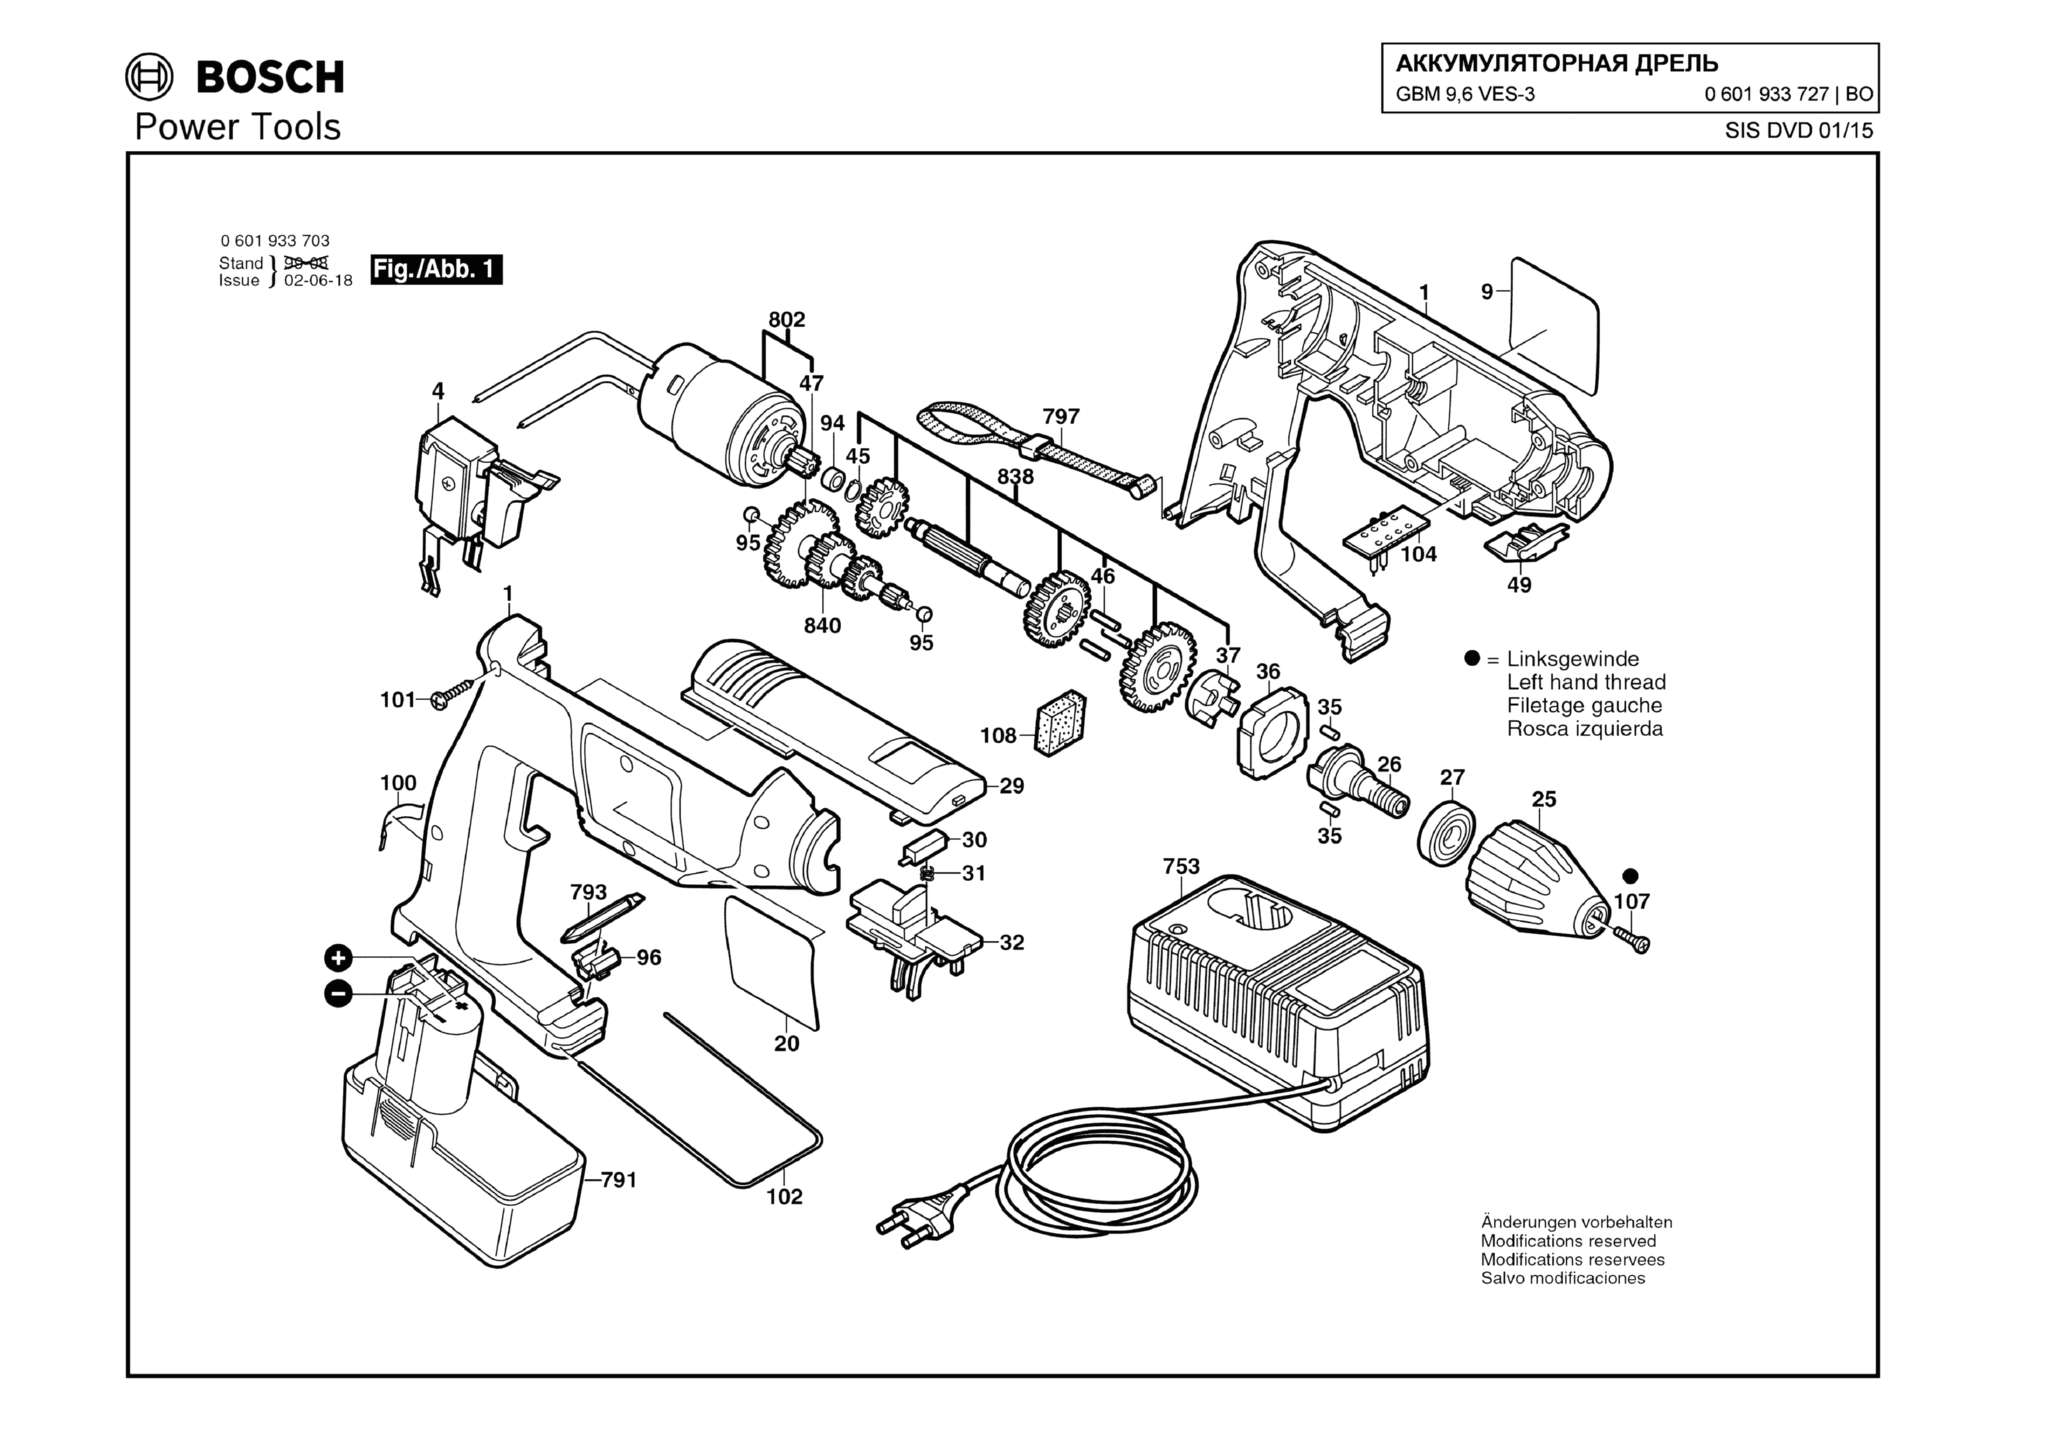 Запчасти, схема и деталировка Bosch GBM 9,6 VES-3 (ТИП 0601933727)